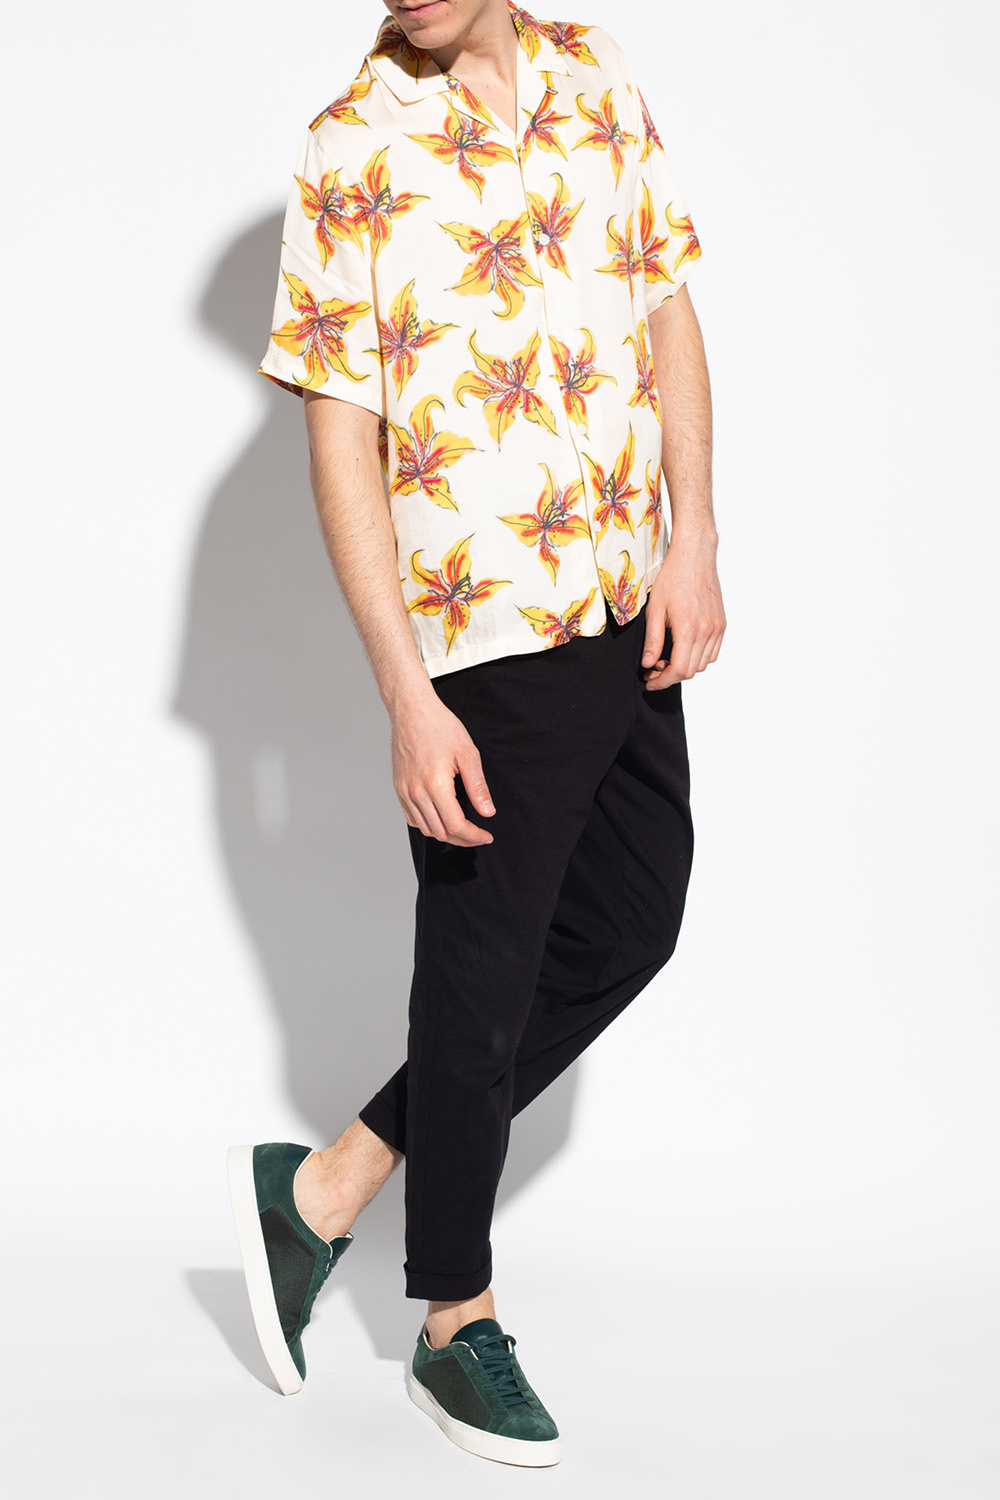 AllSaints ‘Hibiscus’ floral motif shirt